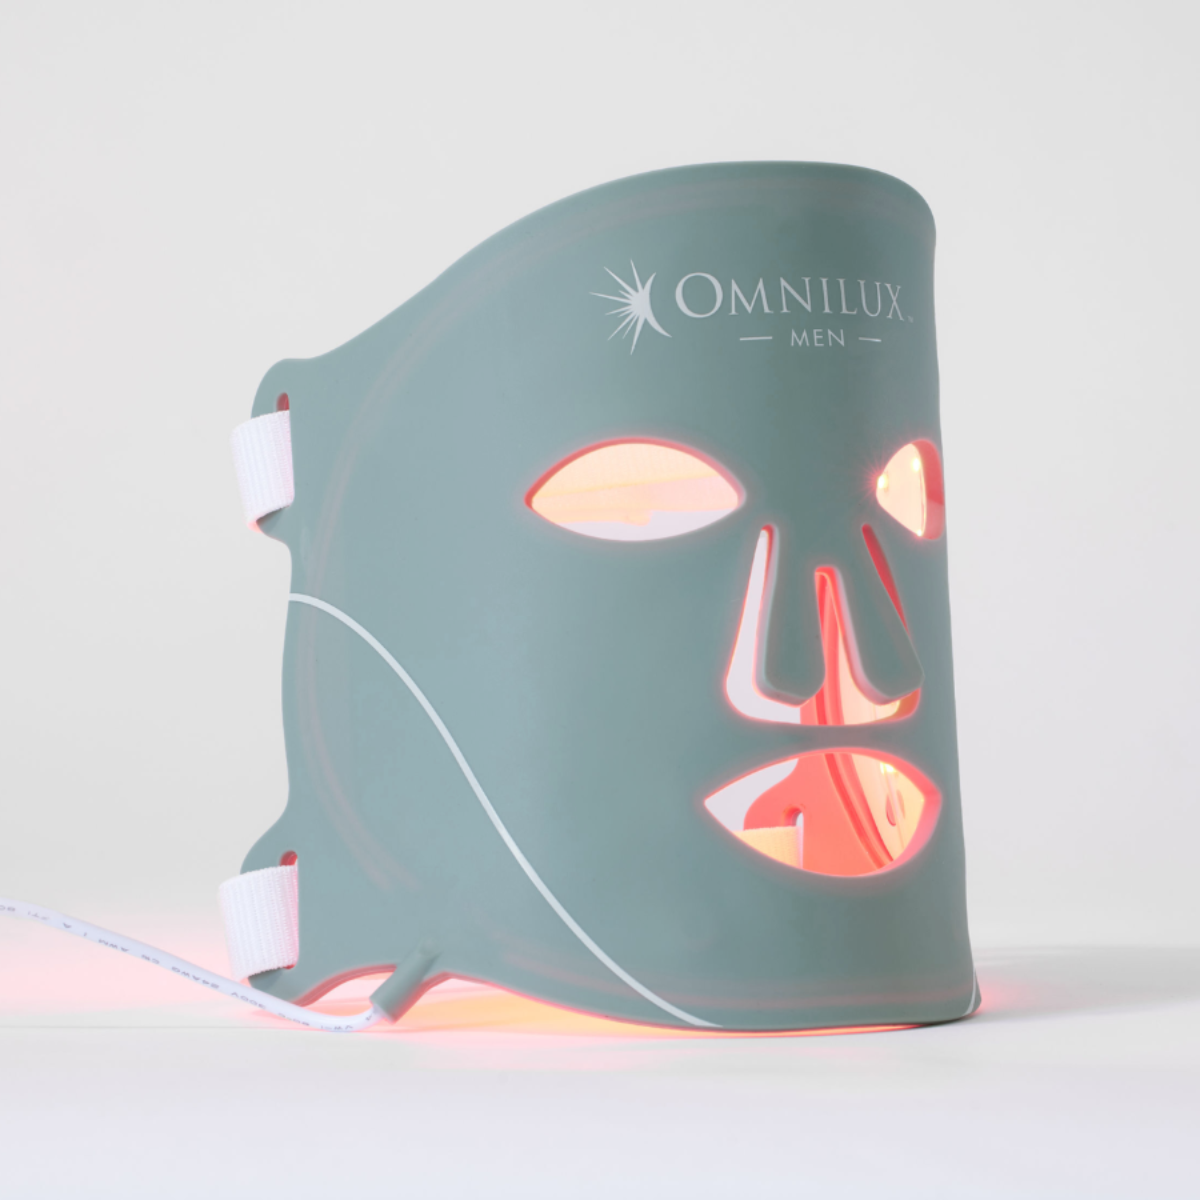 OMNILUX Contour LED Men's Face Mask